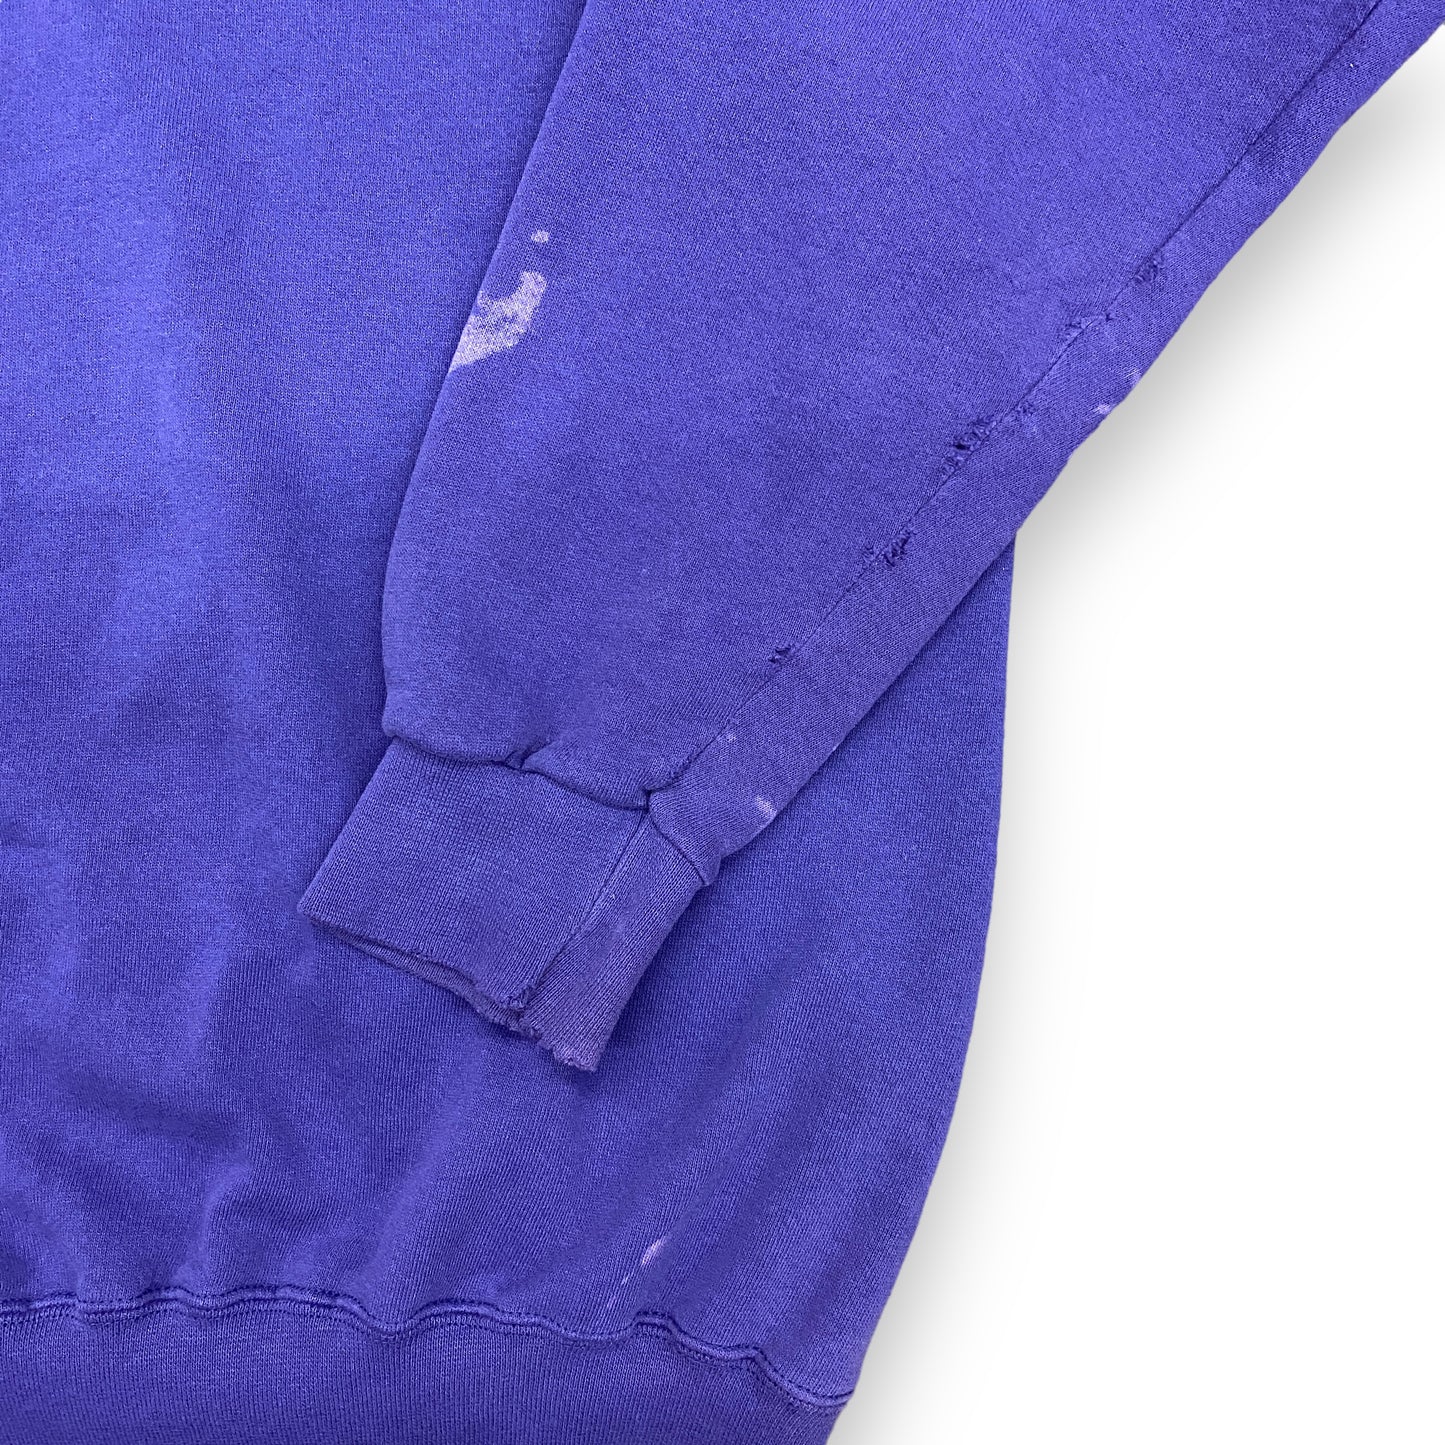 1990s Oversized Purple "Wolves" Raglan Sweatshirt - Size XL